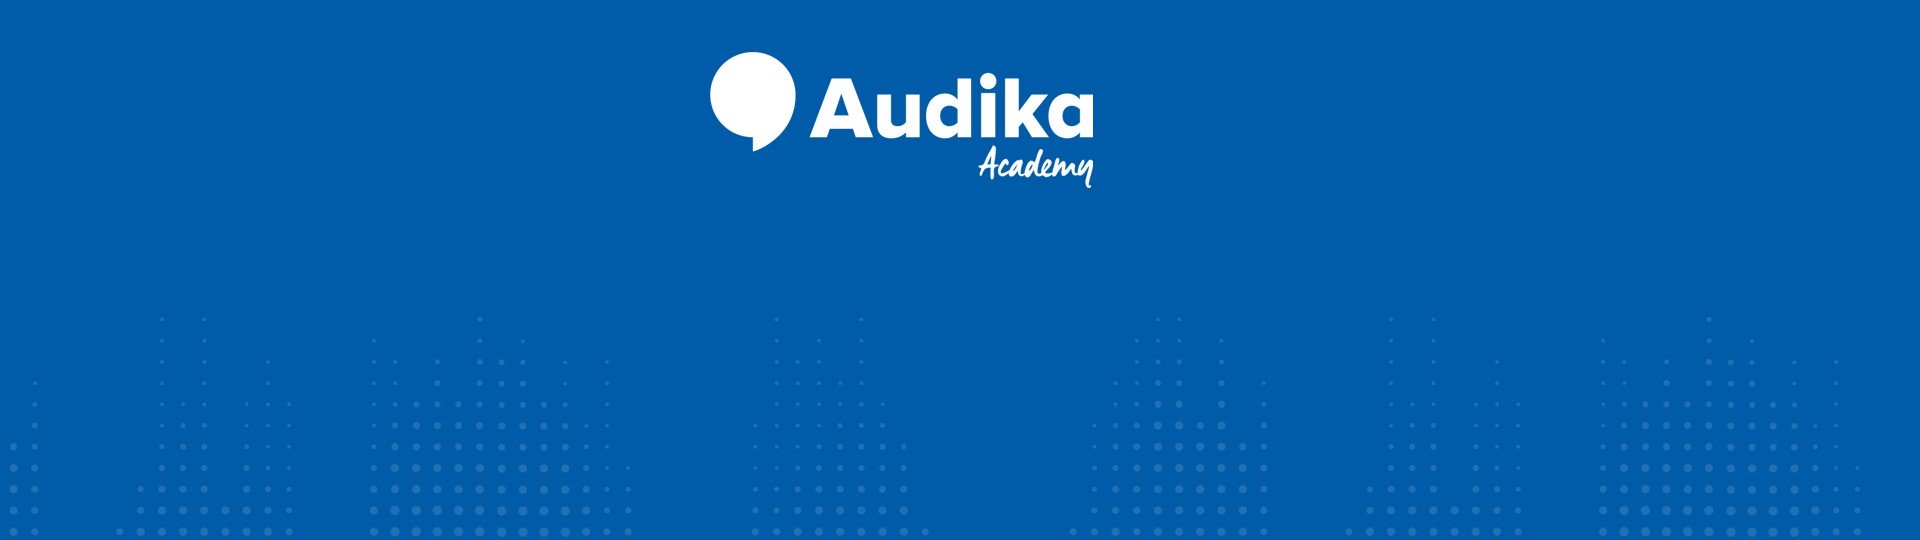 Audika Academy 